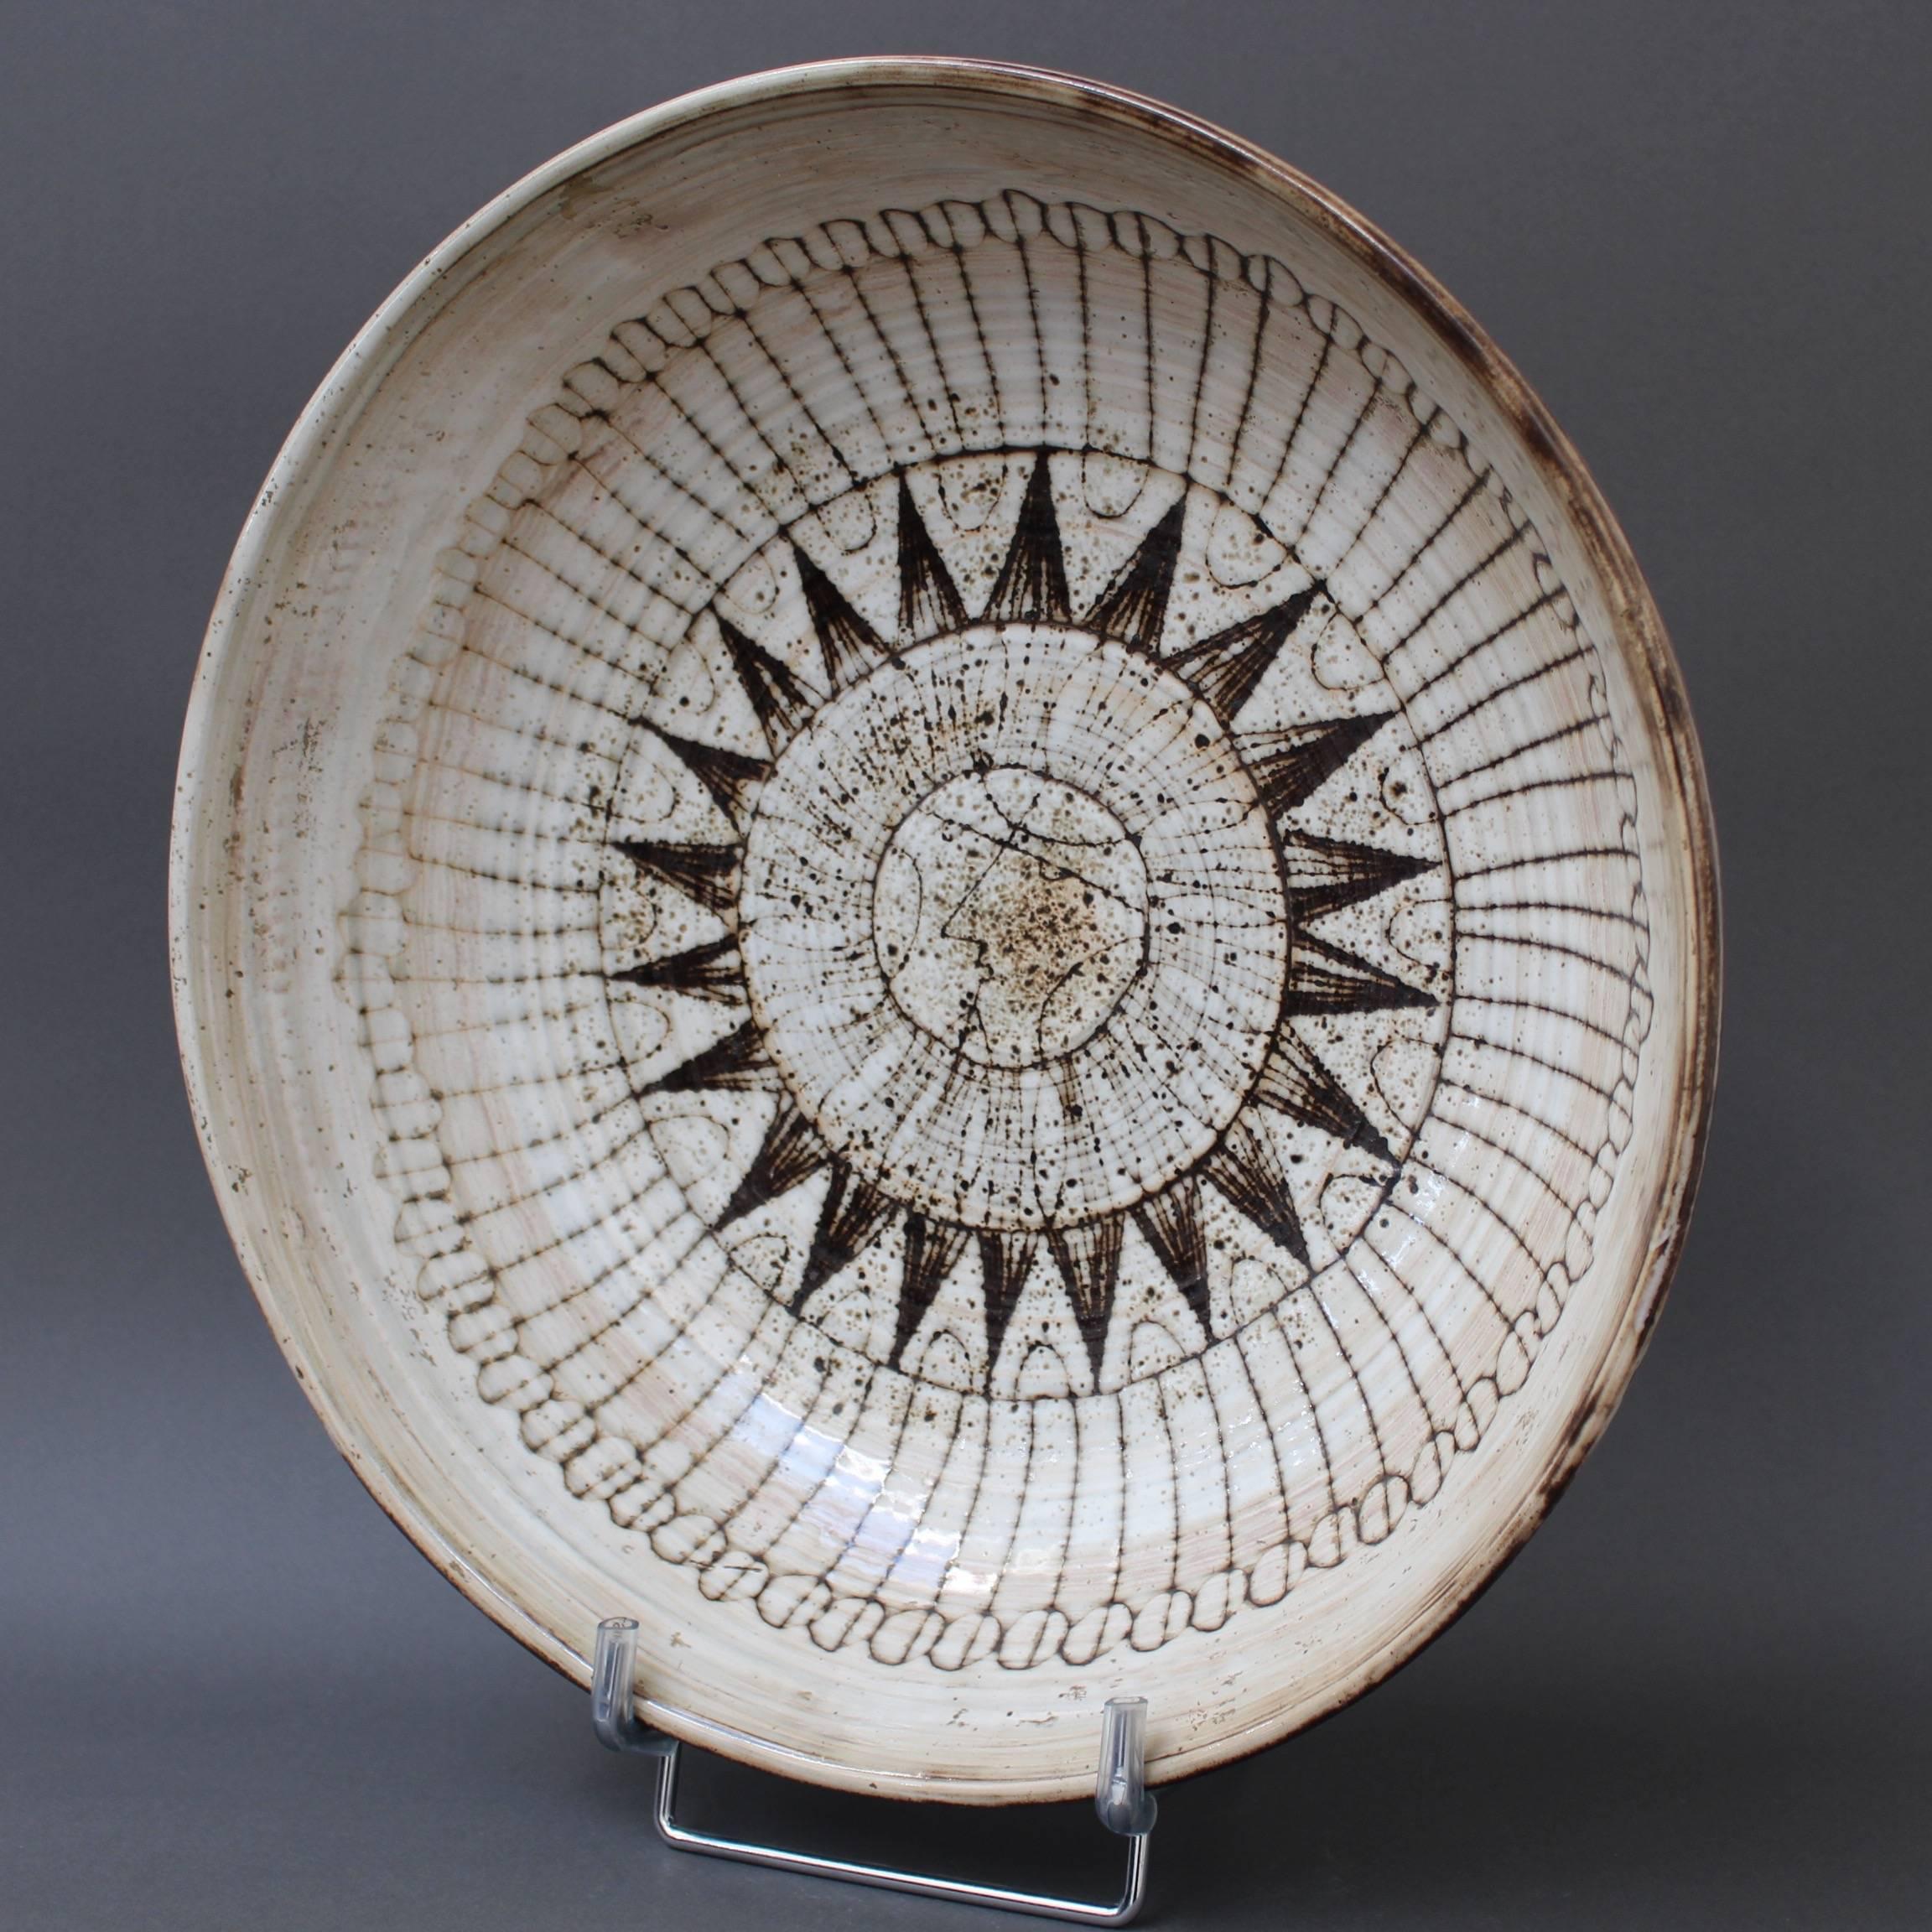 French Large Decorative Bowl with Sunburst Motif by Jacques Pouchain-Atelier Dieulefit